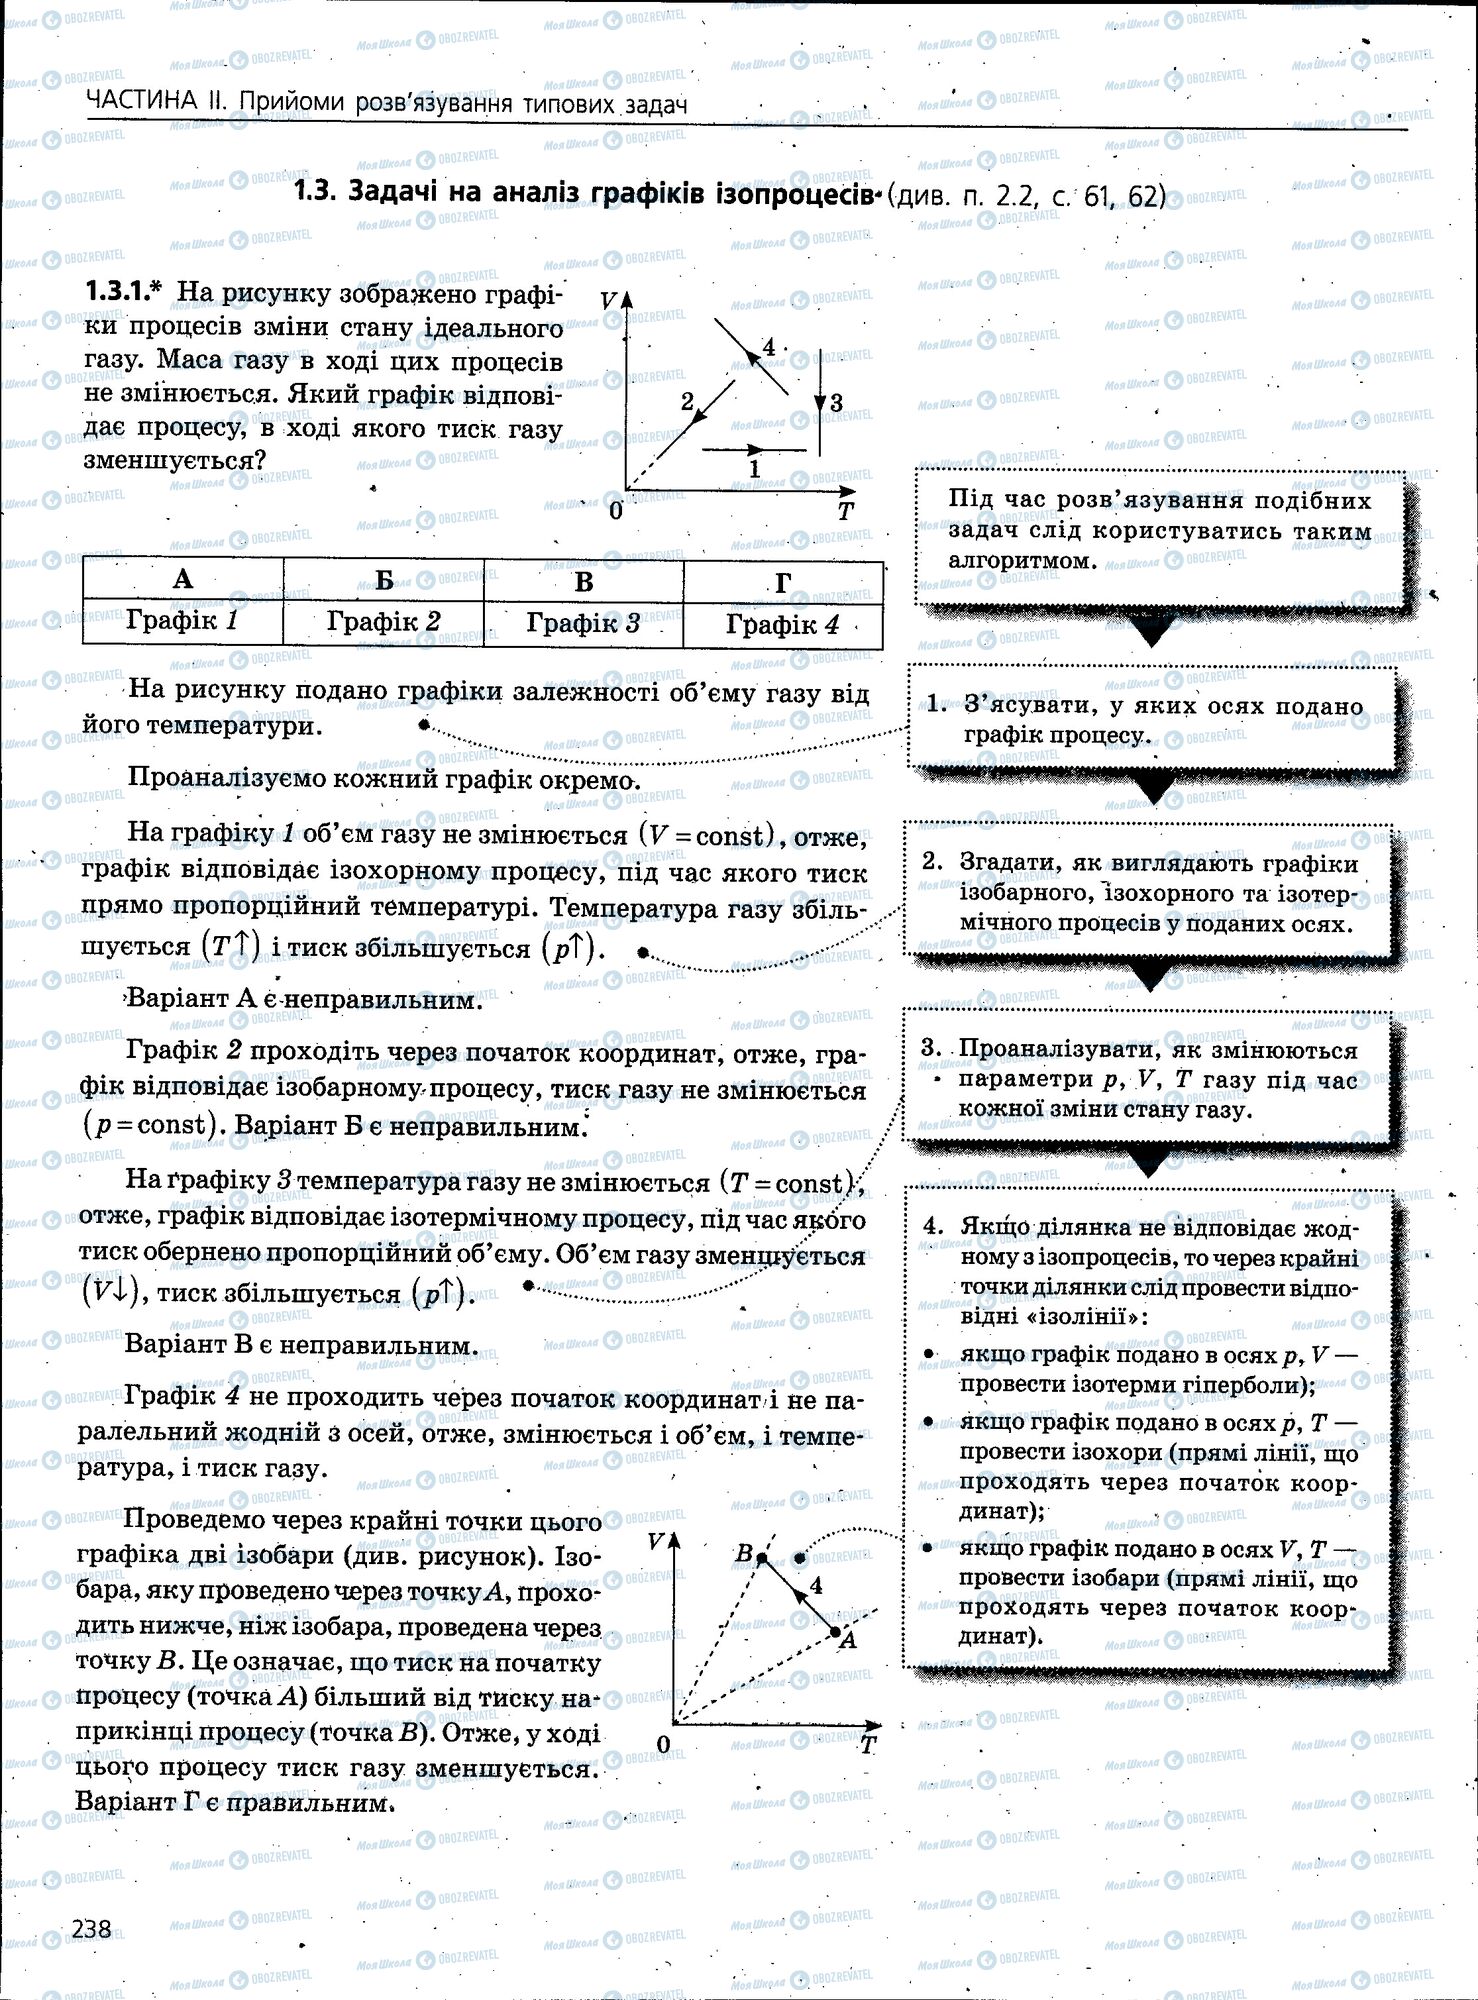 ЗНО Физика 11 класс страница 238